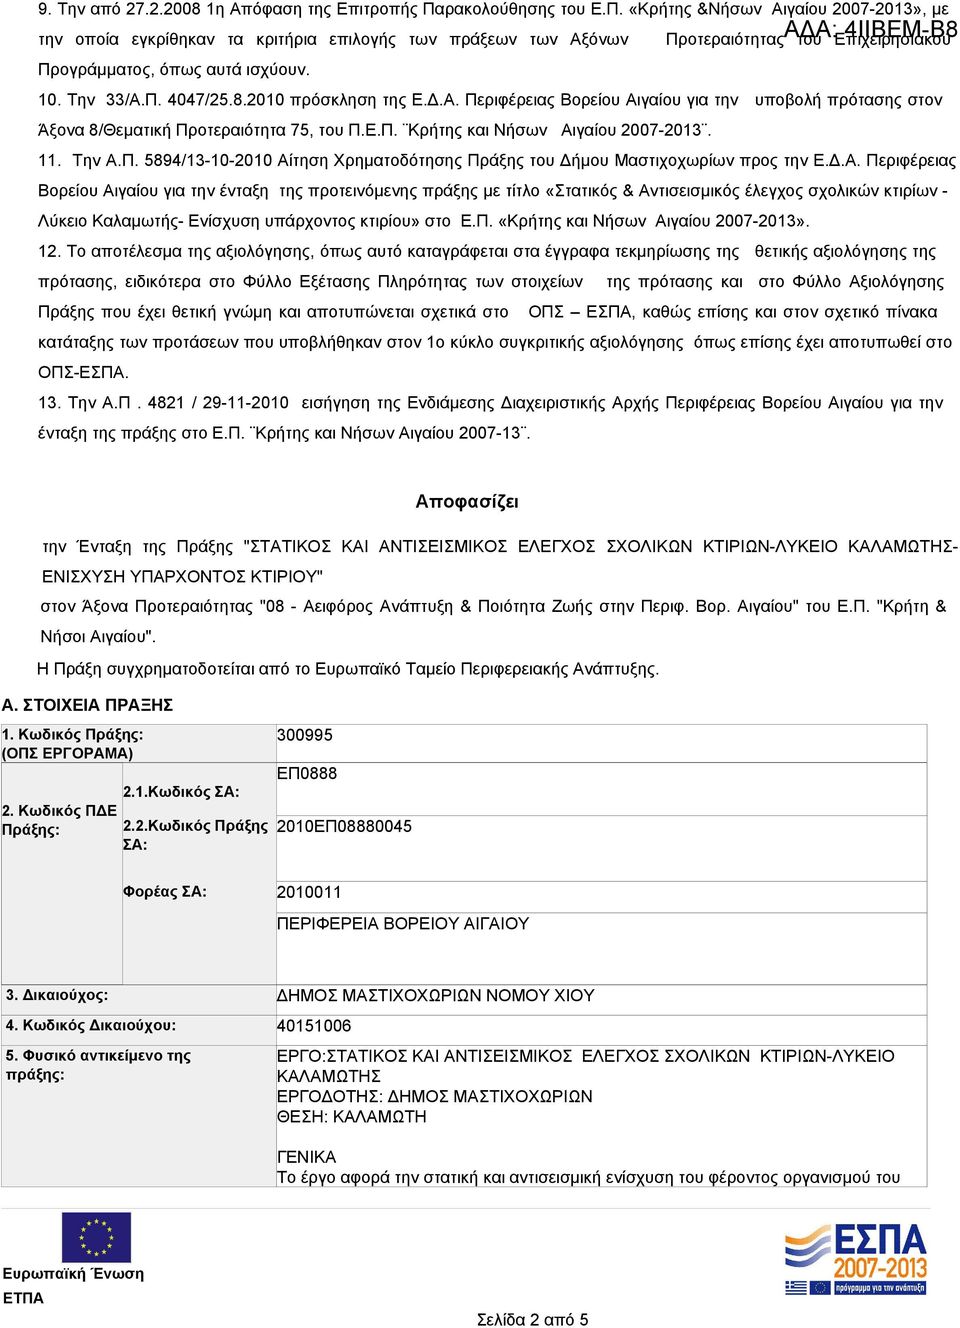 11. Την Α.Π. 5894/13-10-2010 Αίτηση Χρηματοδότησης Πράξης του Δήμου Μαστιχοχωρίων προς την Ε.Δ.Α. Περιφέρειας Βορείου Αιγαίου για την ένταξη της προτεινόμενης πράξης με τίτλο «Στατικός & Αντισεισμικός έλεγχος σχολικών κτιρίων - Λύκειο Καλαμωτής- Ενίσχυση υπάρχοντος κτιρίου» στο Ε.